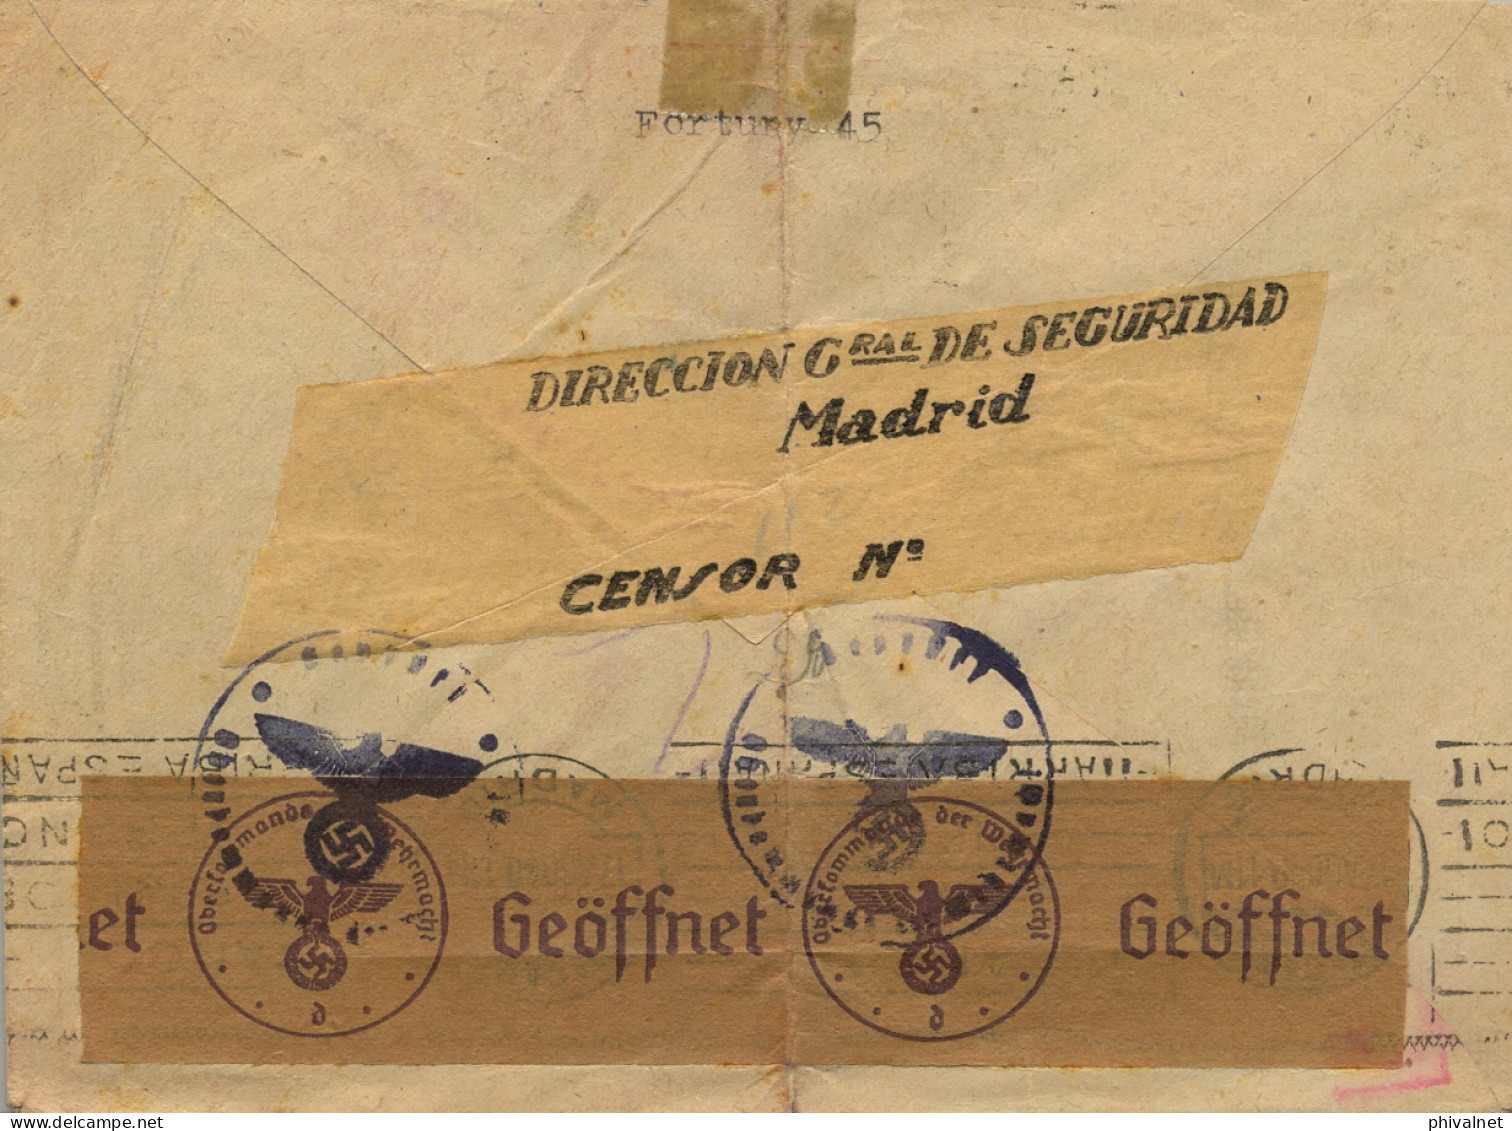 1940 , MADRID - OBERLIND , SOBRE CIRCULADO , DOBLE BANDA DE CIERRE DE CENSURA - Lettres & Documents